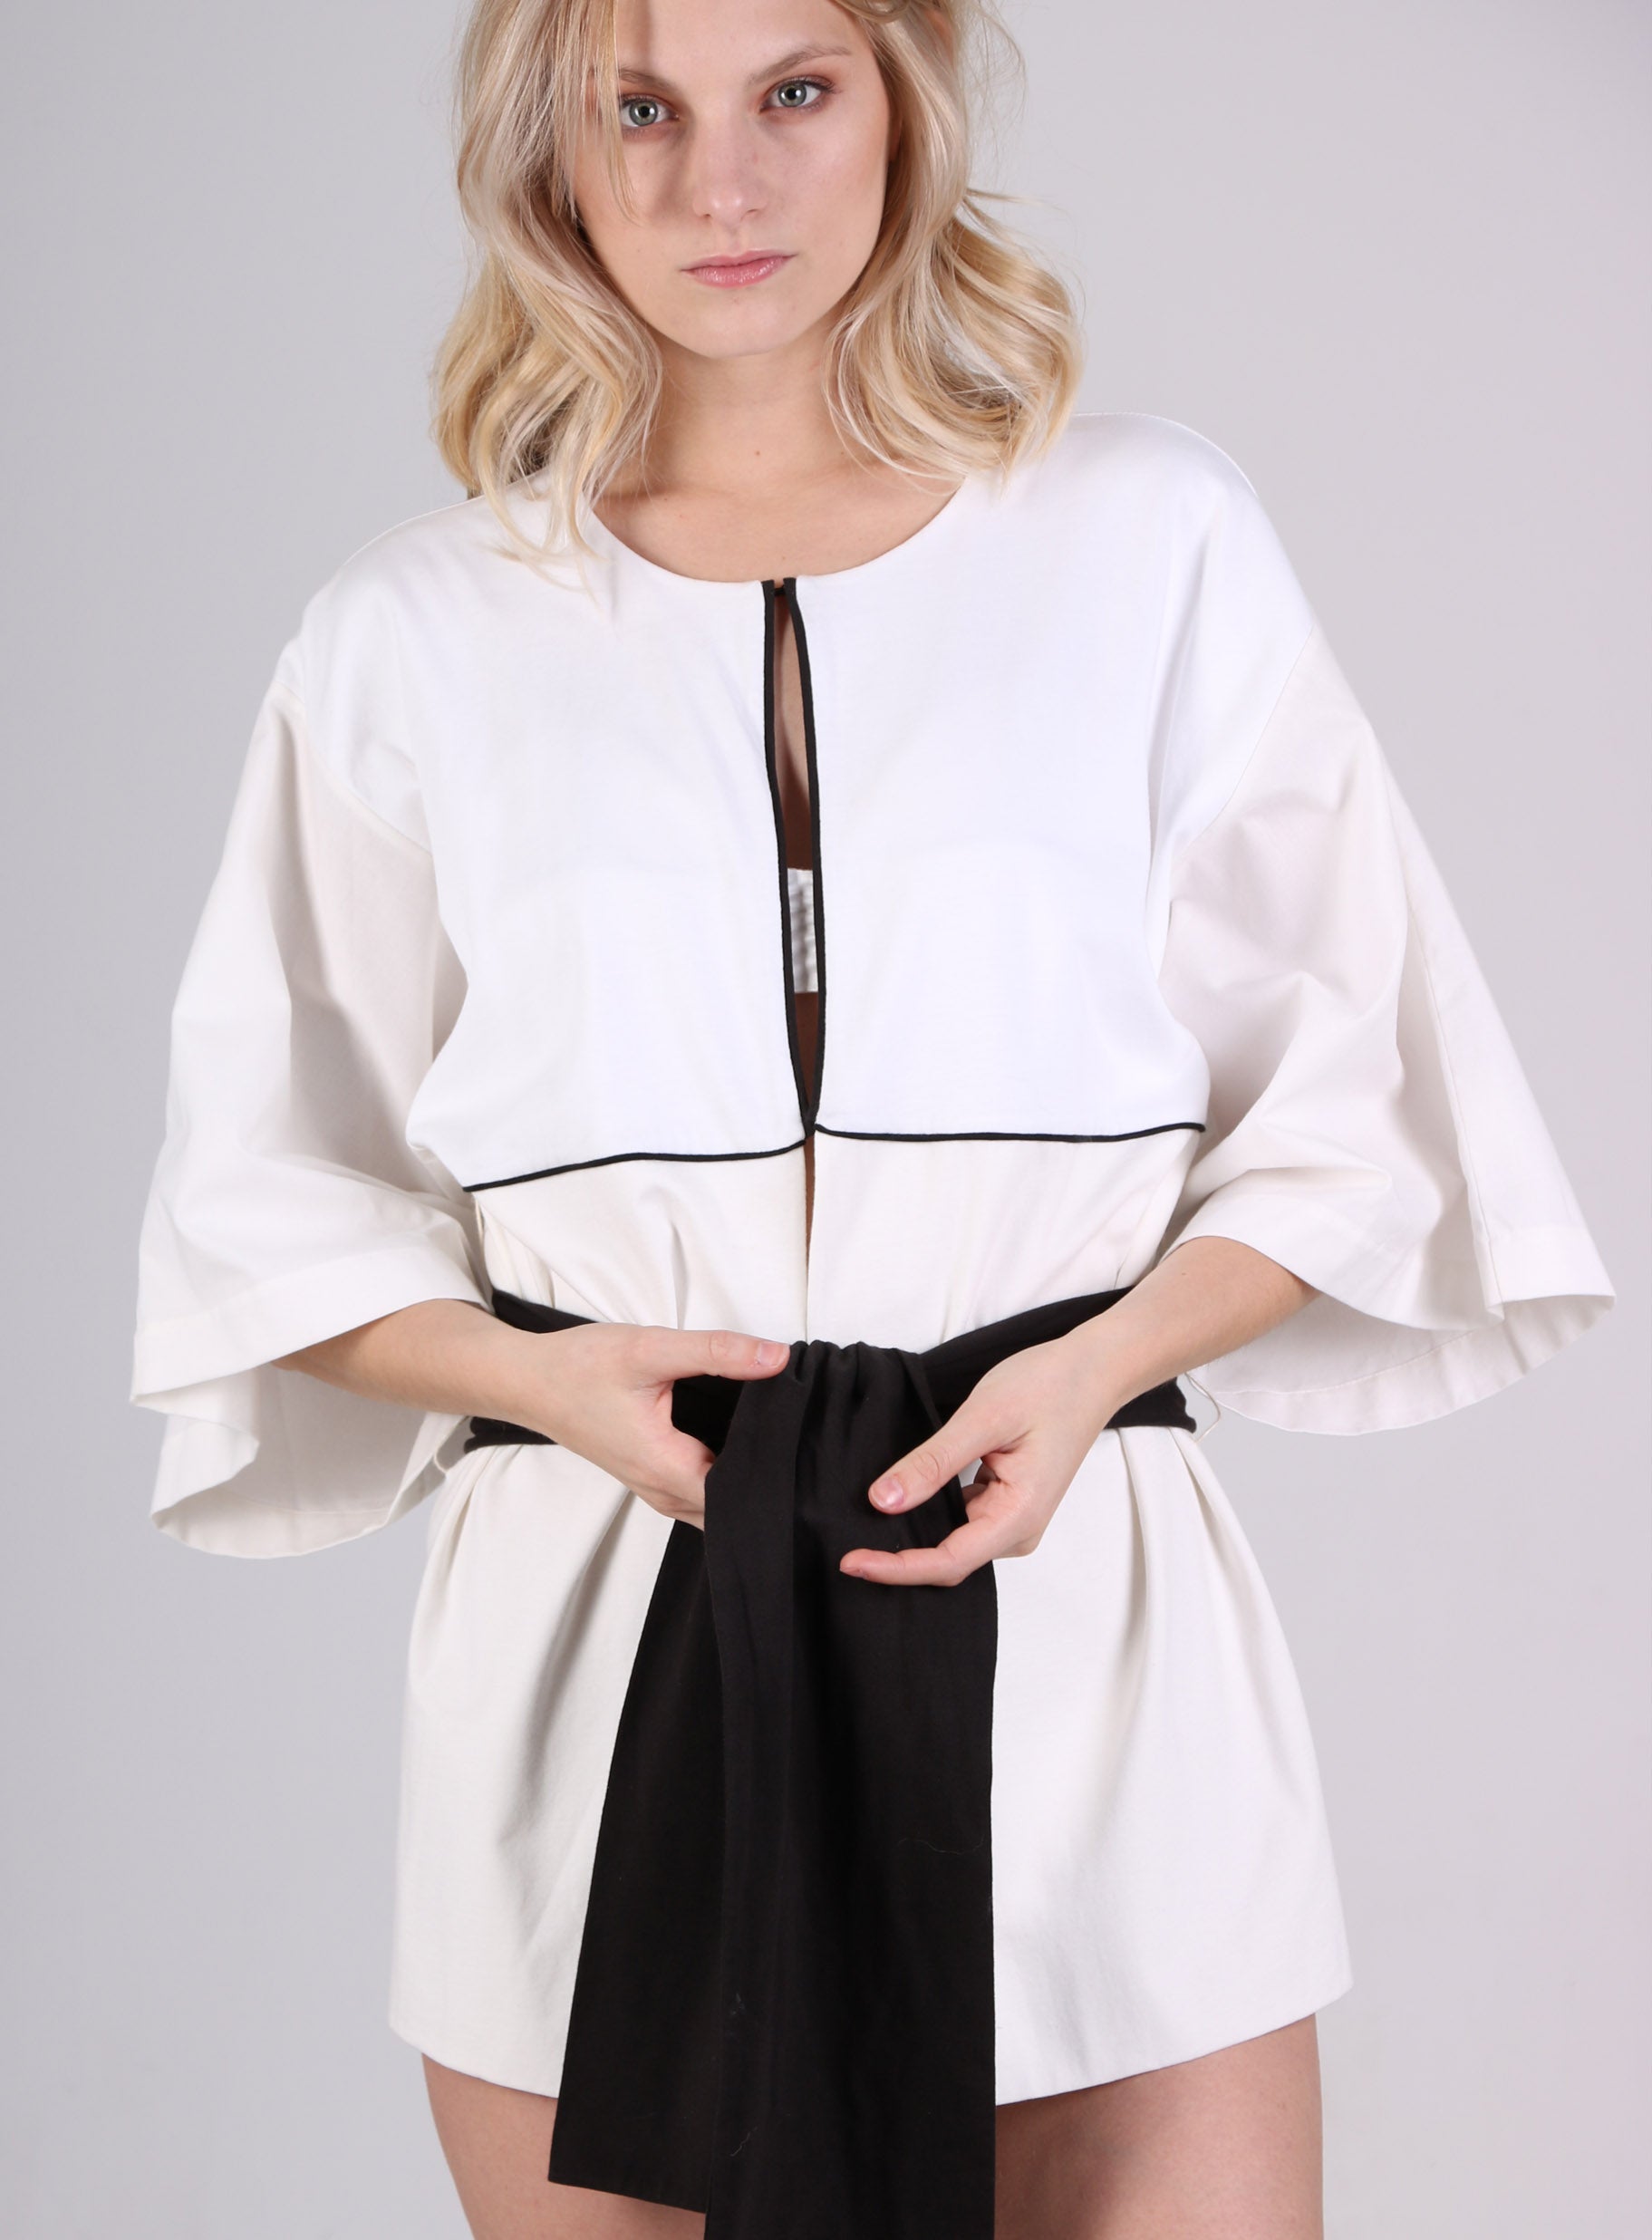 Veste forme kimono en coton bio tri matières, avec une ceinture large en contraste 